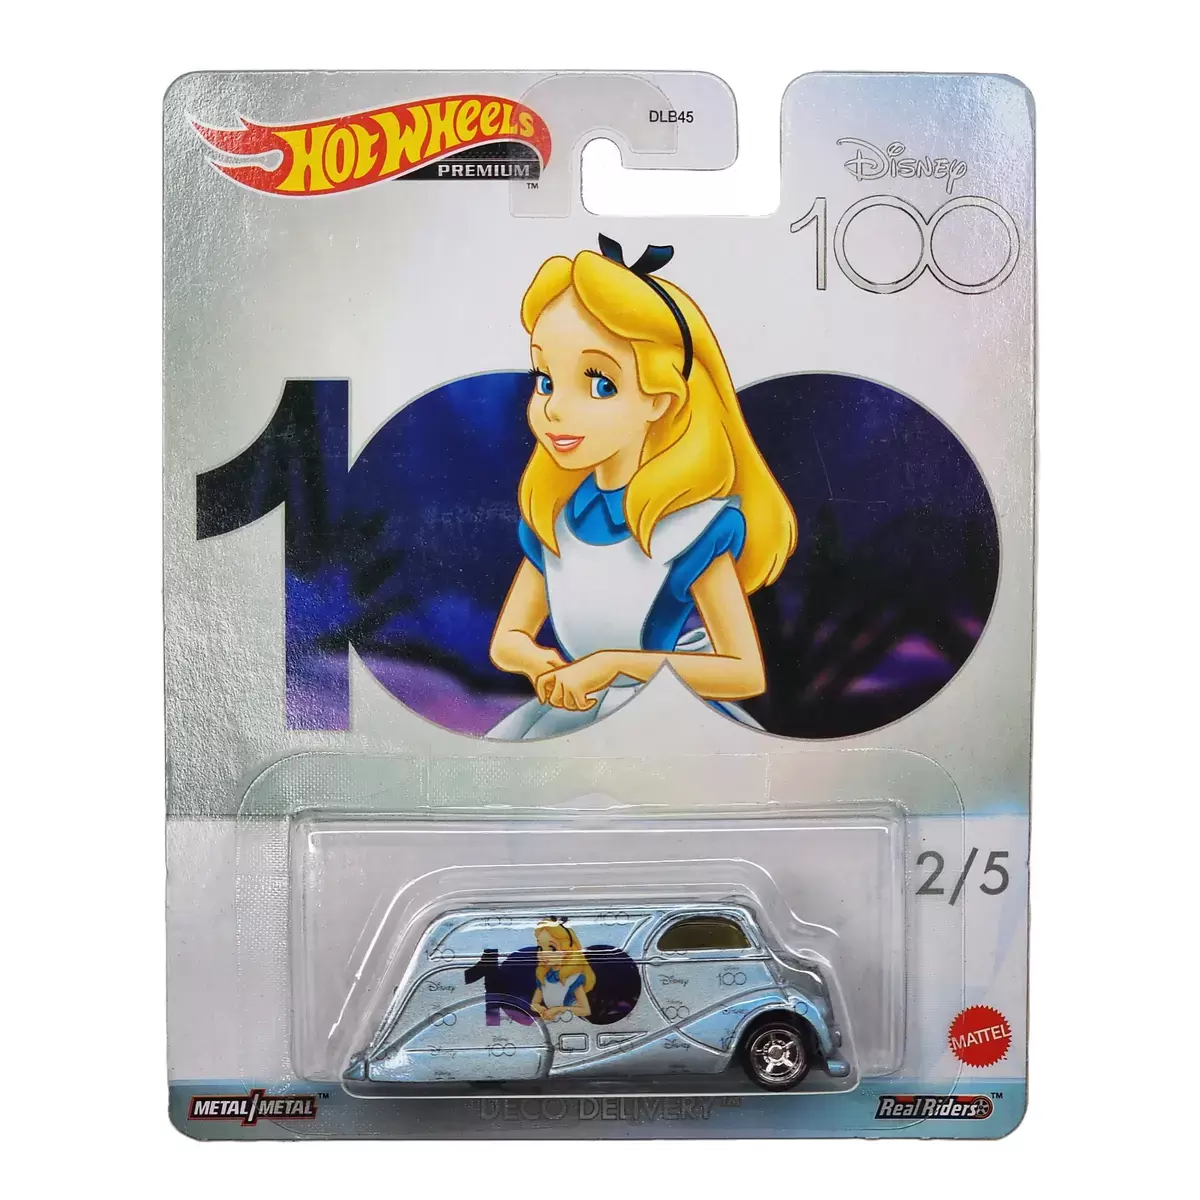 Pop Culture - Hot Wheels (DLB45) - Disney 100 - Deco Delivery